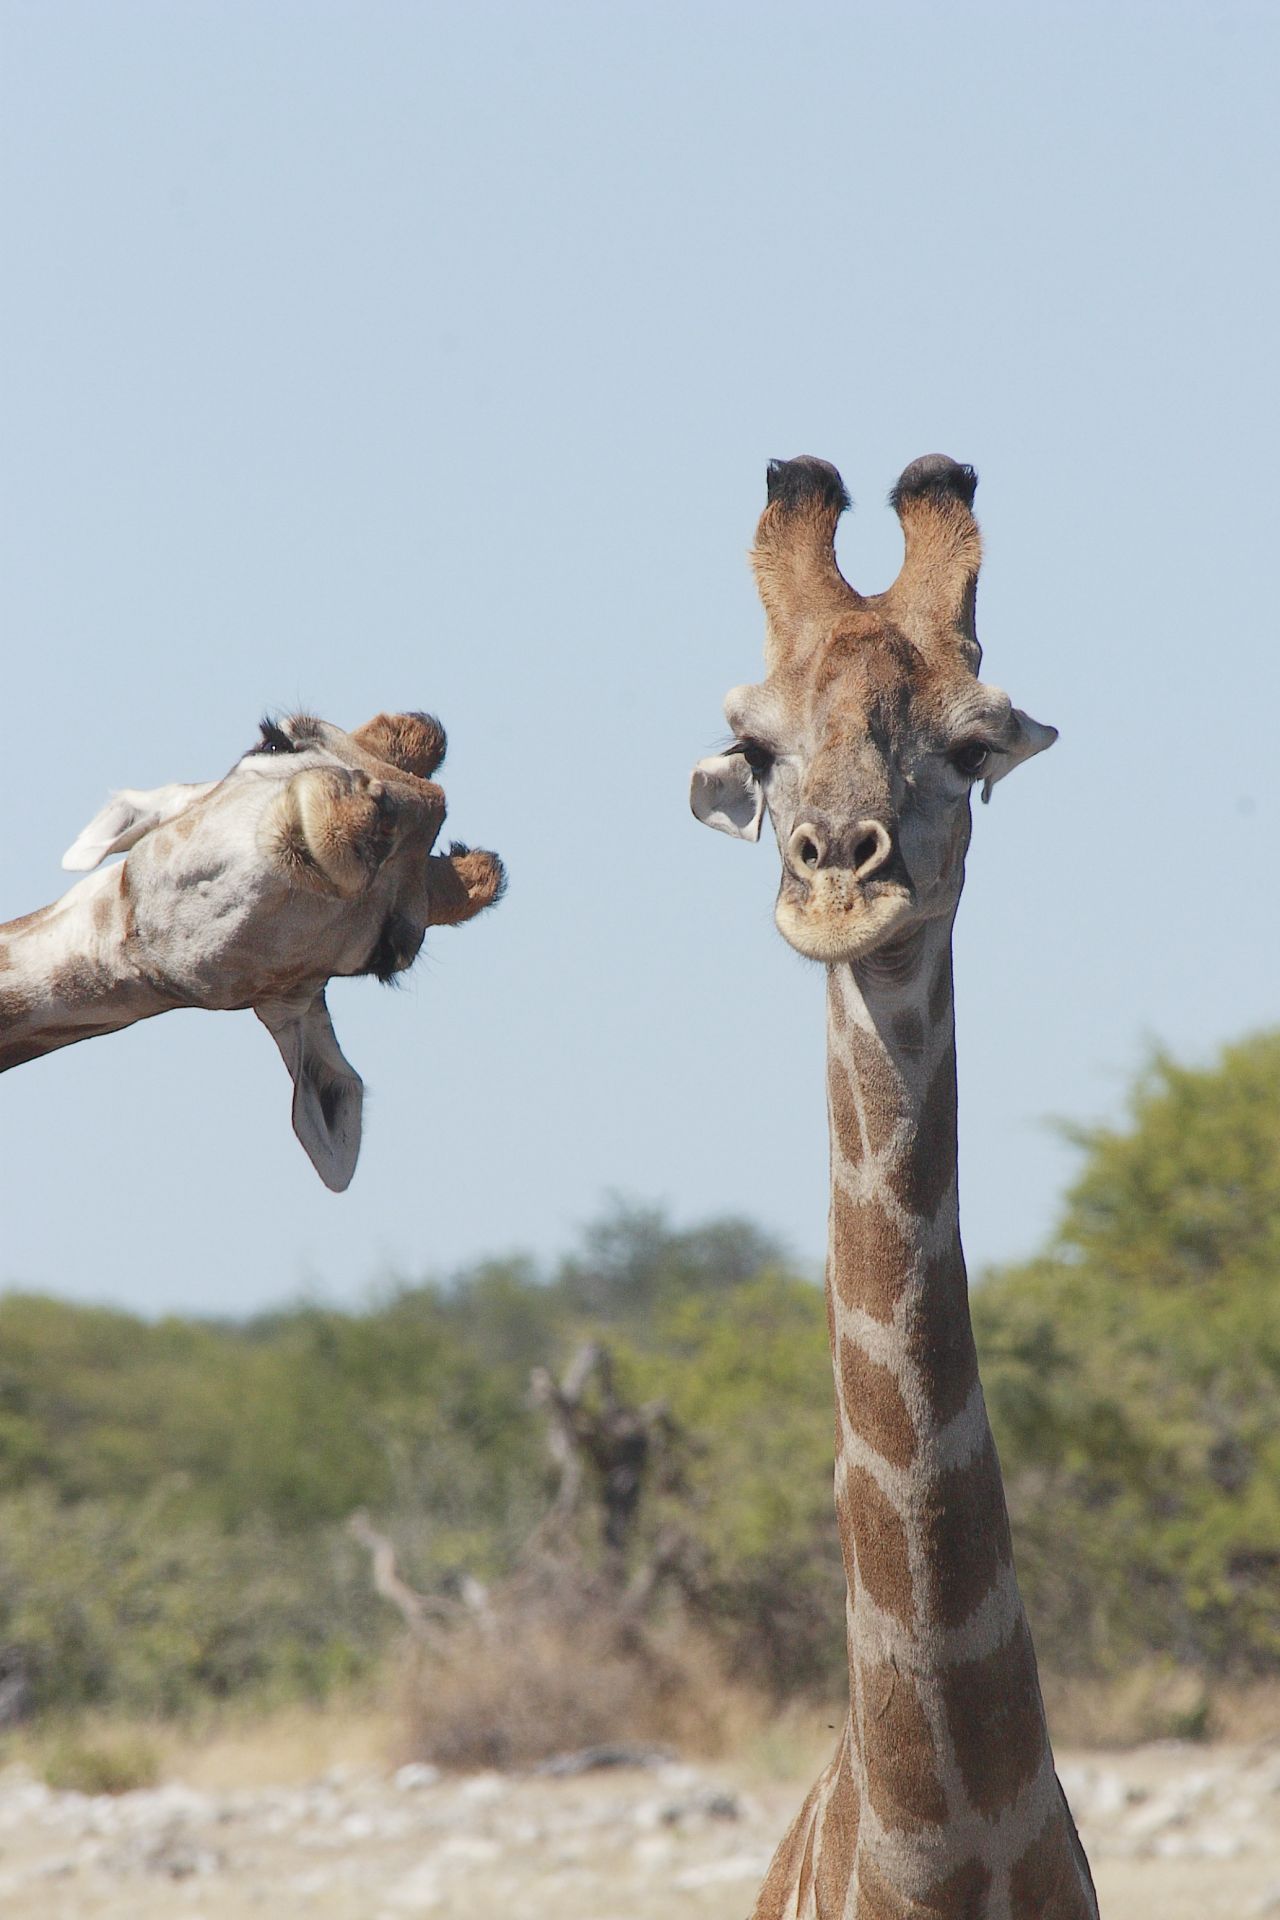 Da guckst du! Dieses Foto gewann einen Preis beim "Comedy Wildlife Photography Award" 2020 und wurde im Etosha-Nationalpark in Namibia aufgenommen. 